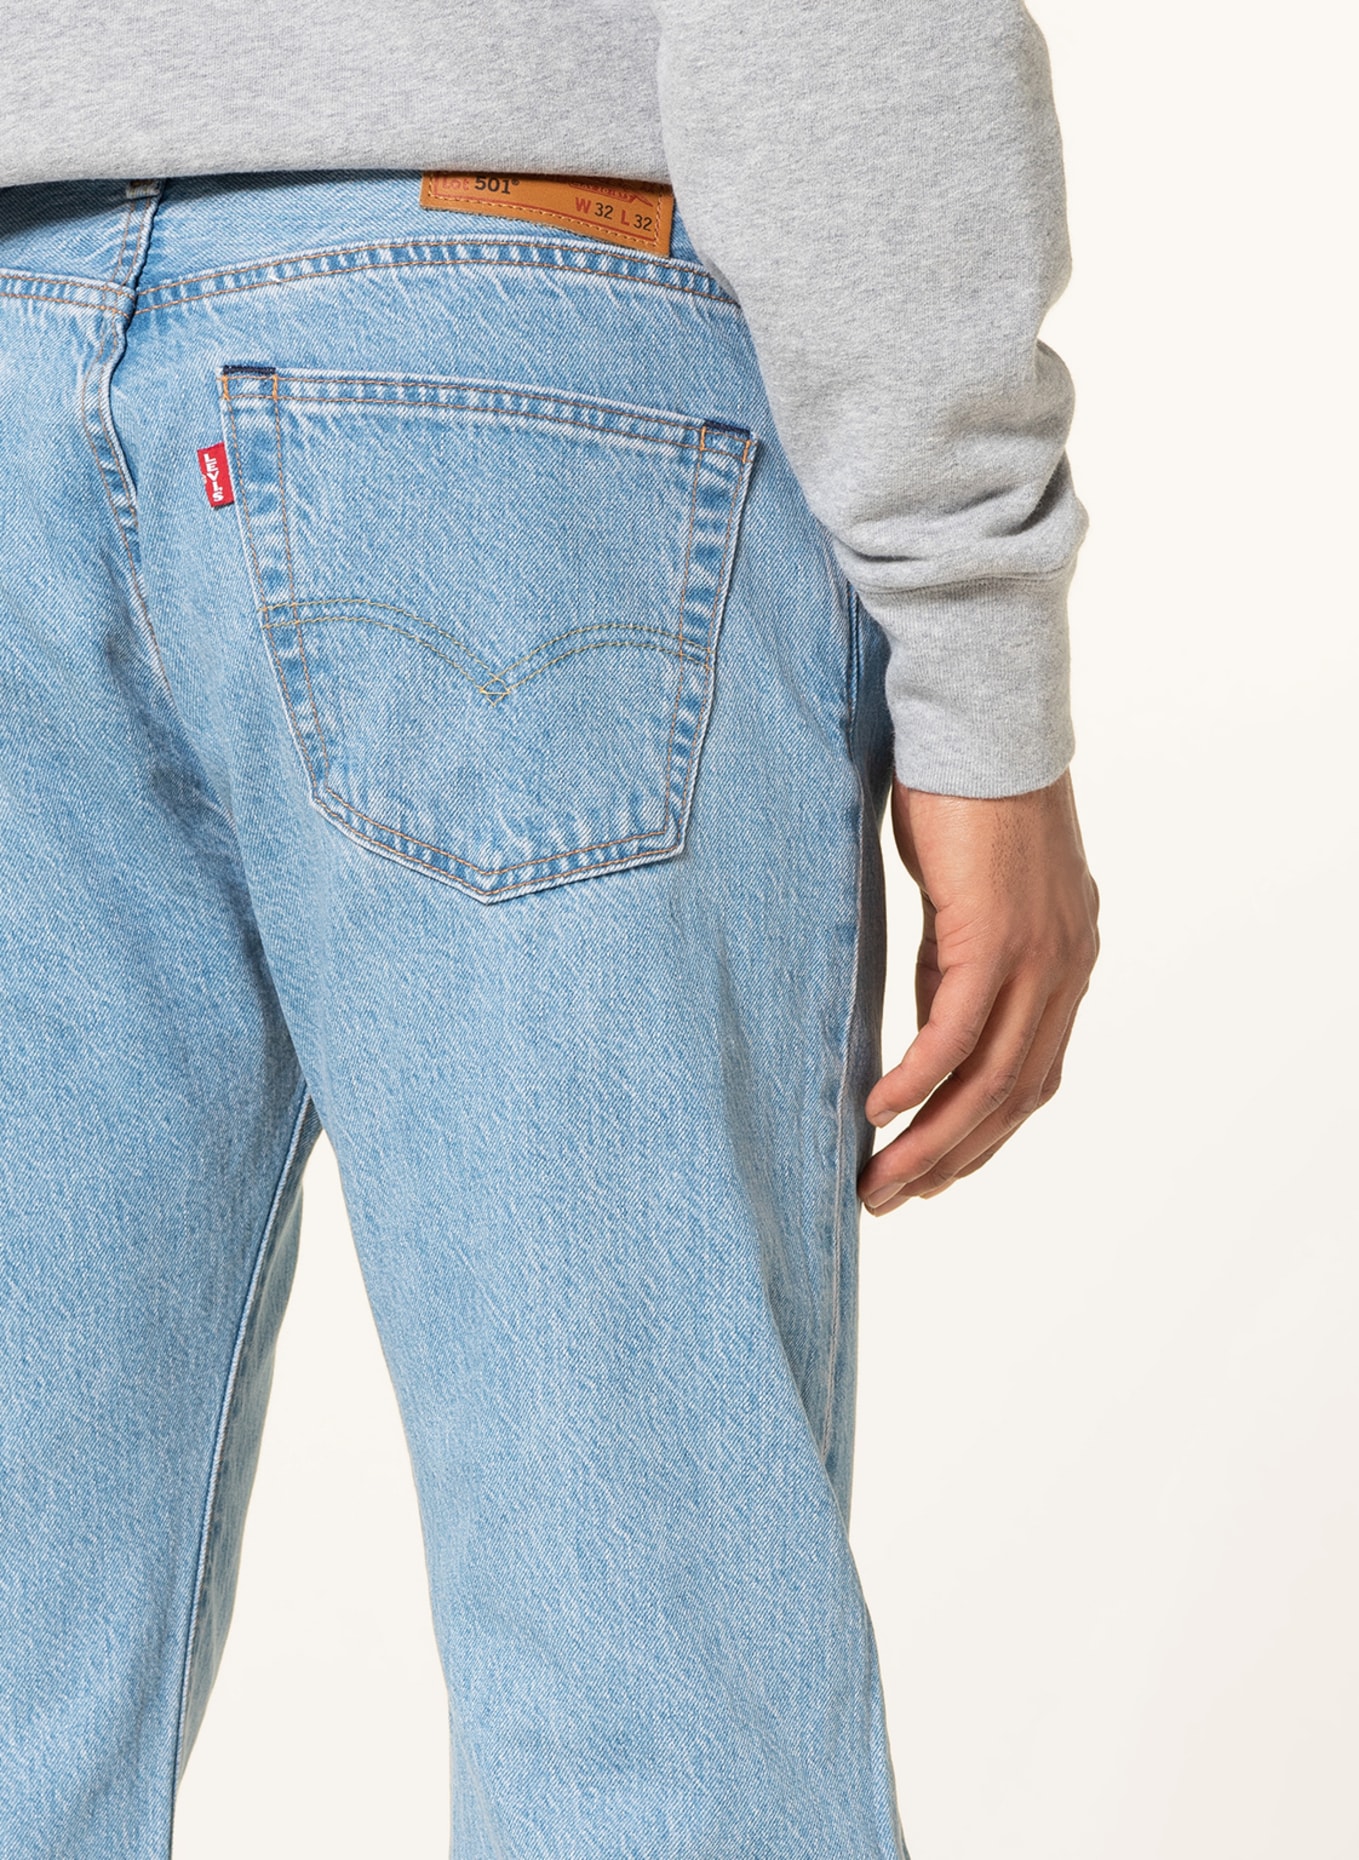 Levi's® Jeans 501 regular fit, Color: 86 Med Indigo - Flat Finish (Image 5)